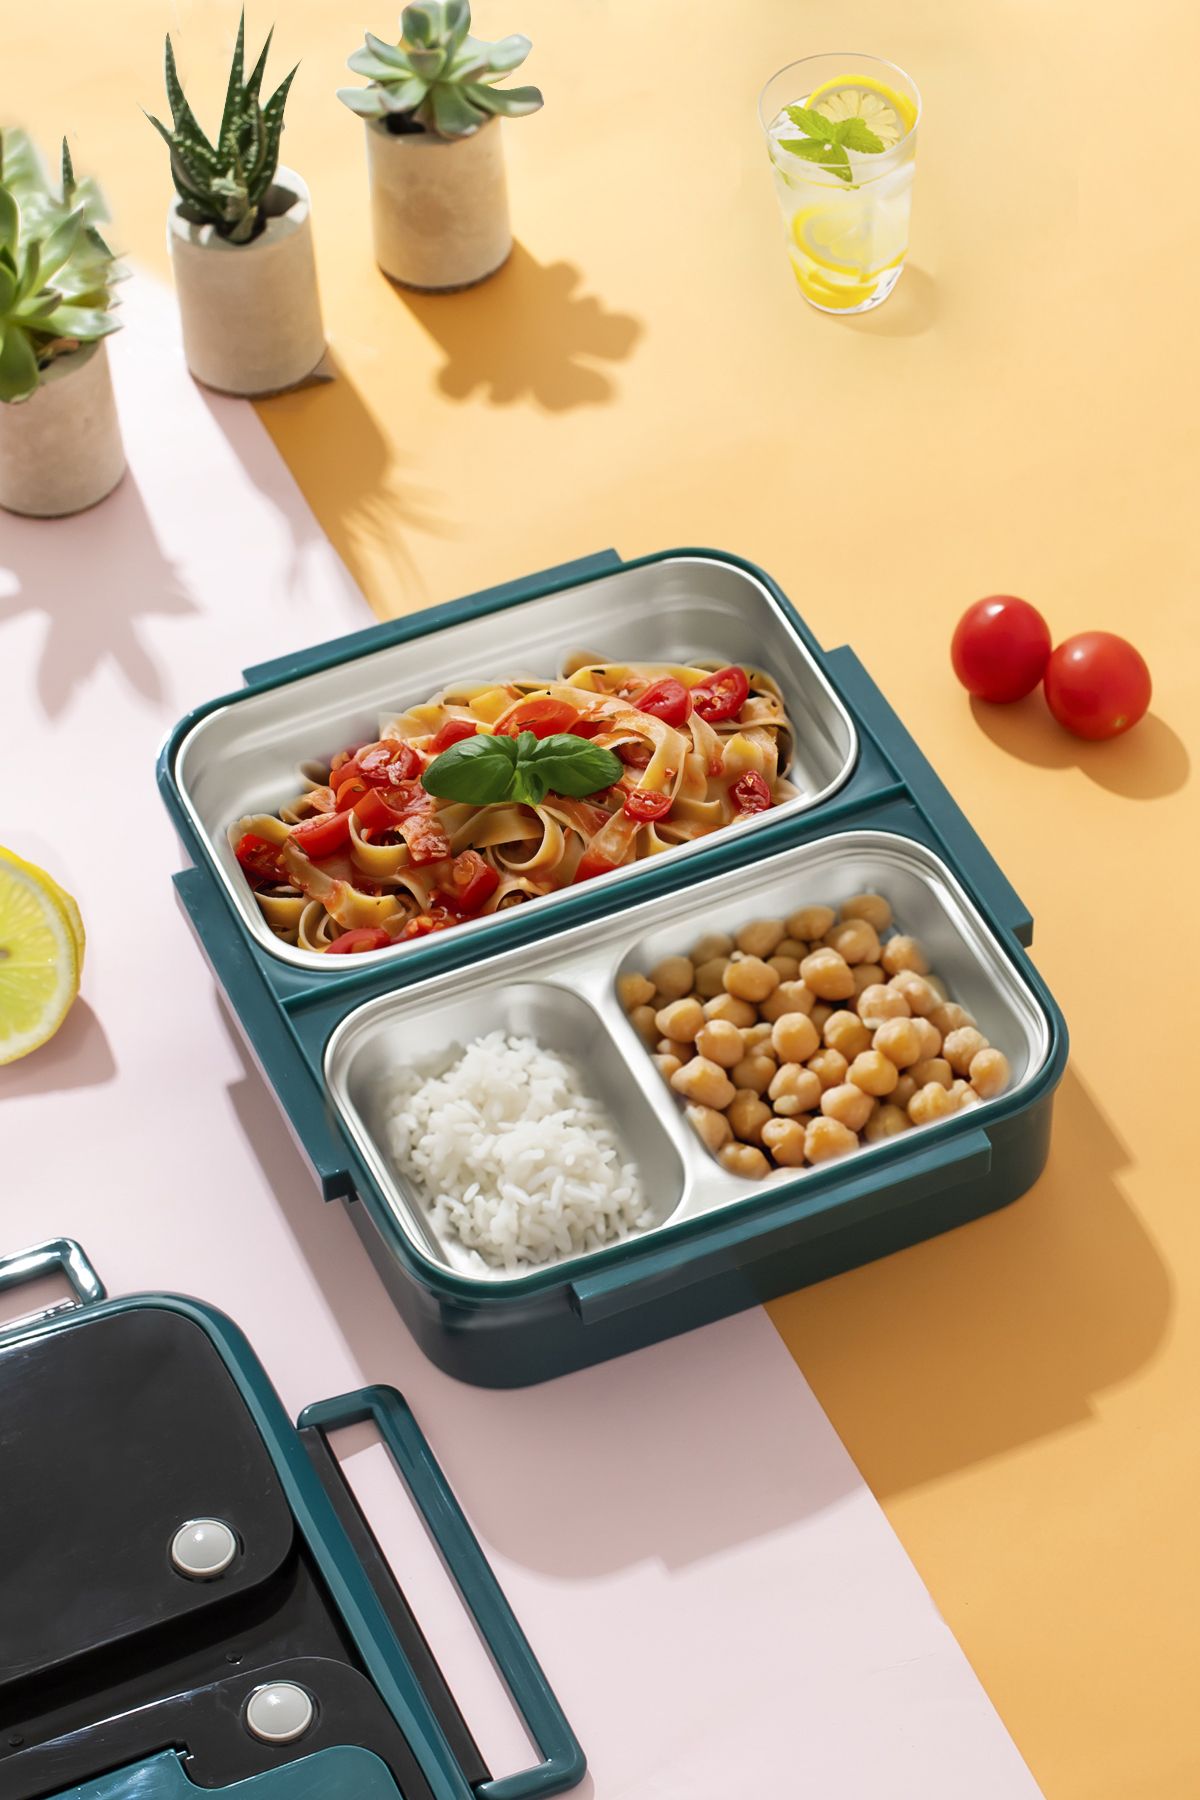 Porsima Ckr Çelik Isı Yalıtımlı 3 Bölmeli Yemek Termosu Beslenme Kutusu Lunchbox Sefer Tası - Yeşil